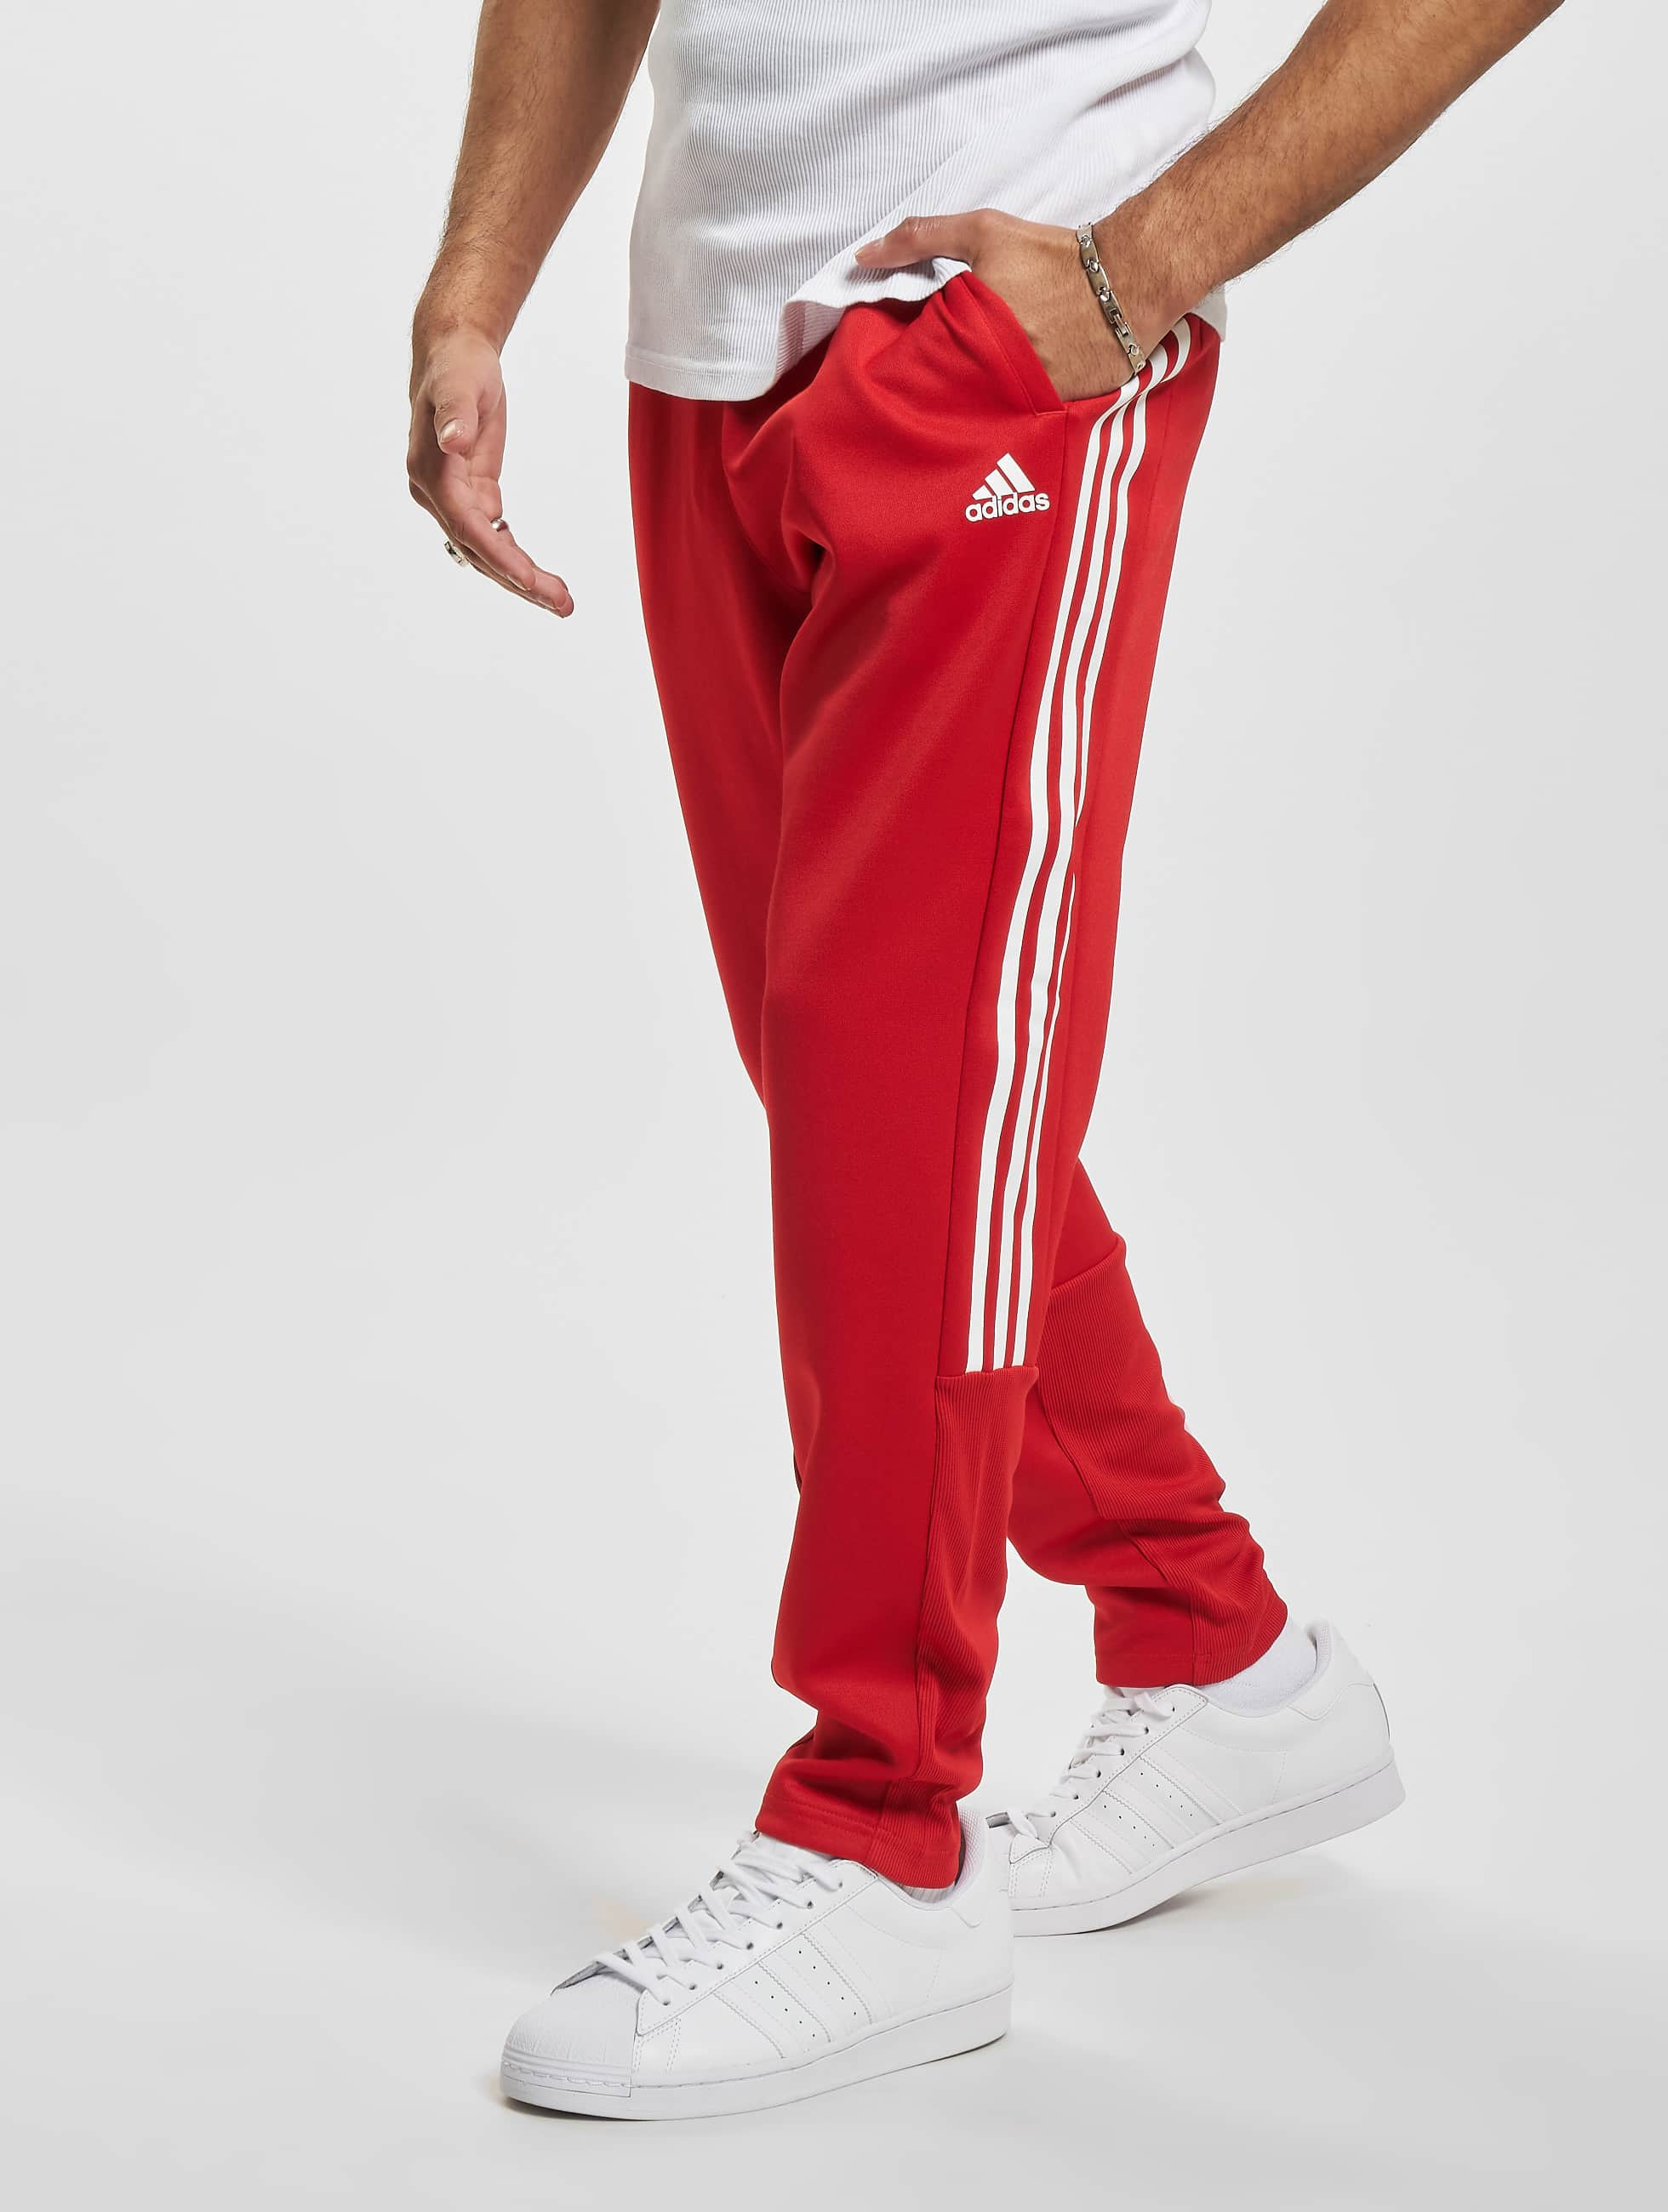 Overvloedig Vernederen Meerdere adidas Originals broek / joggingbroek Originals in rood 996124